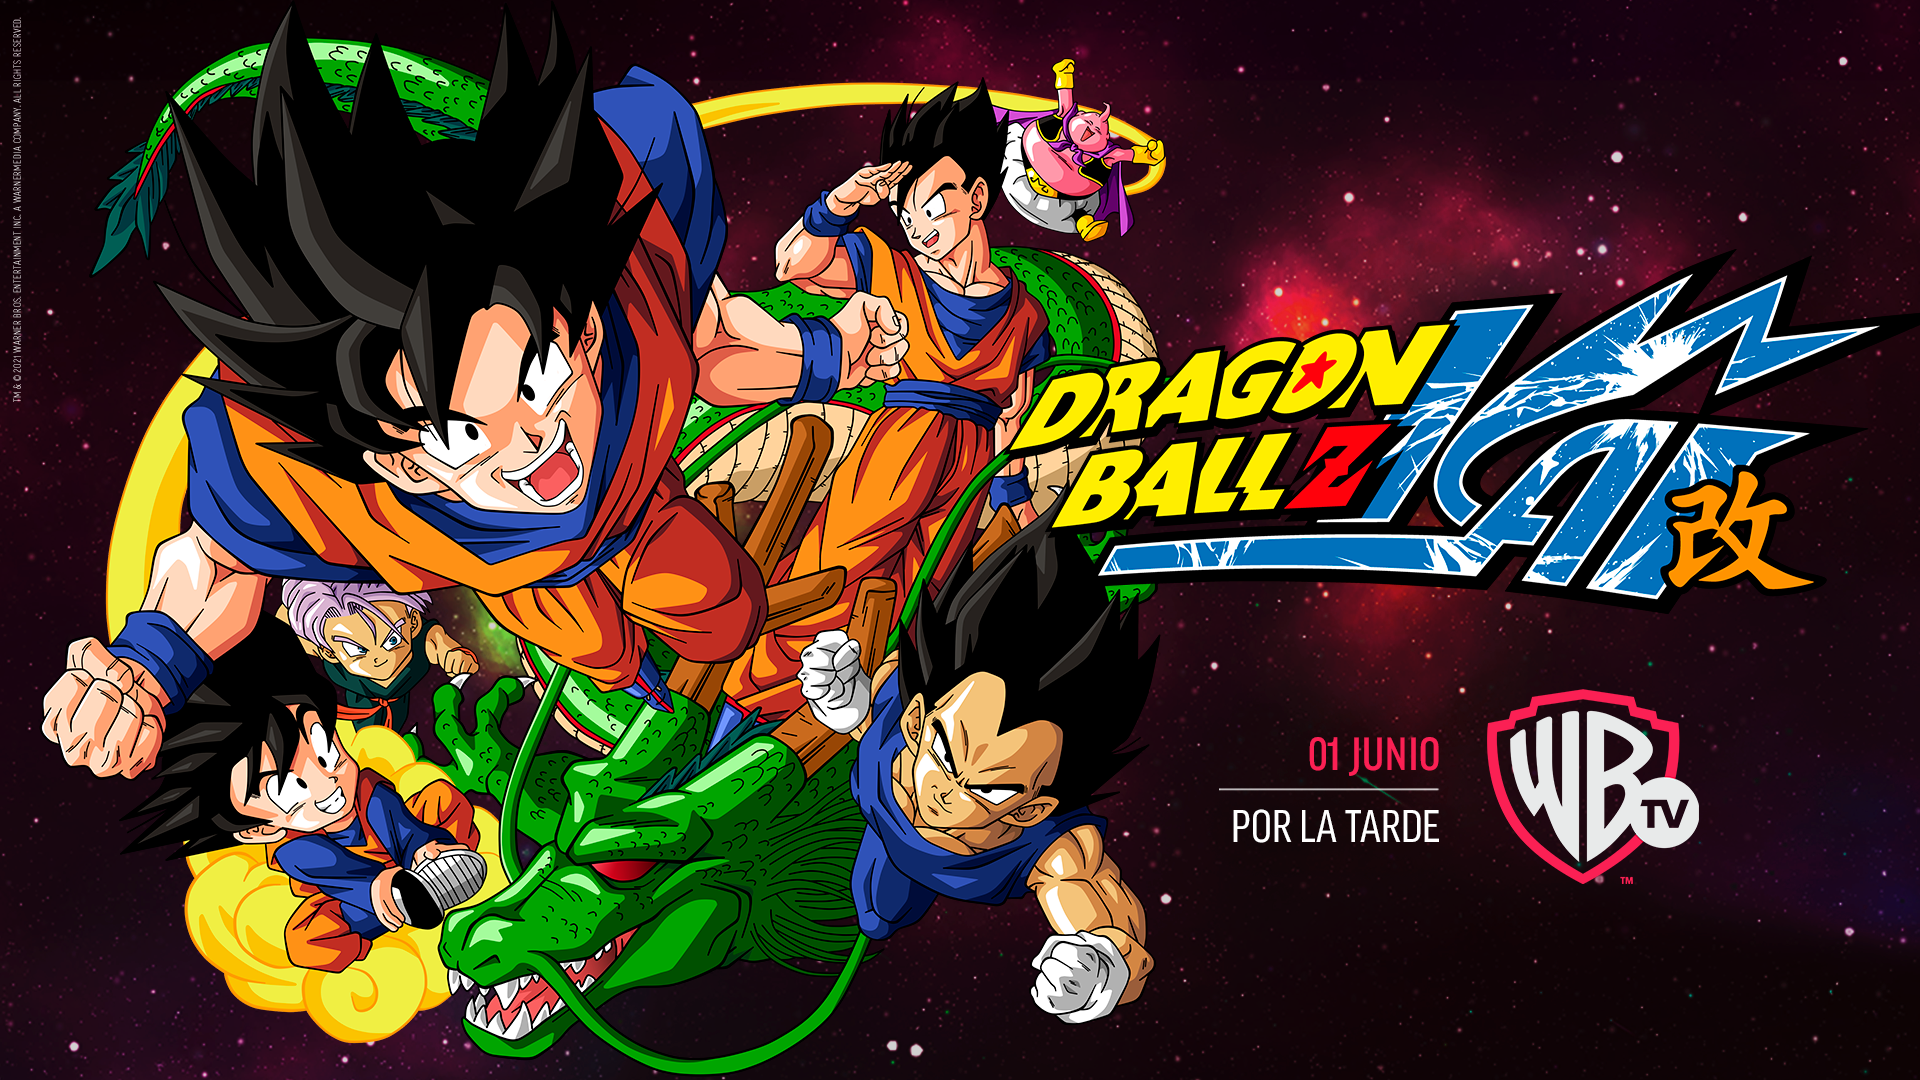 Serie Dragon Ball Z Esferas Del Dragon 